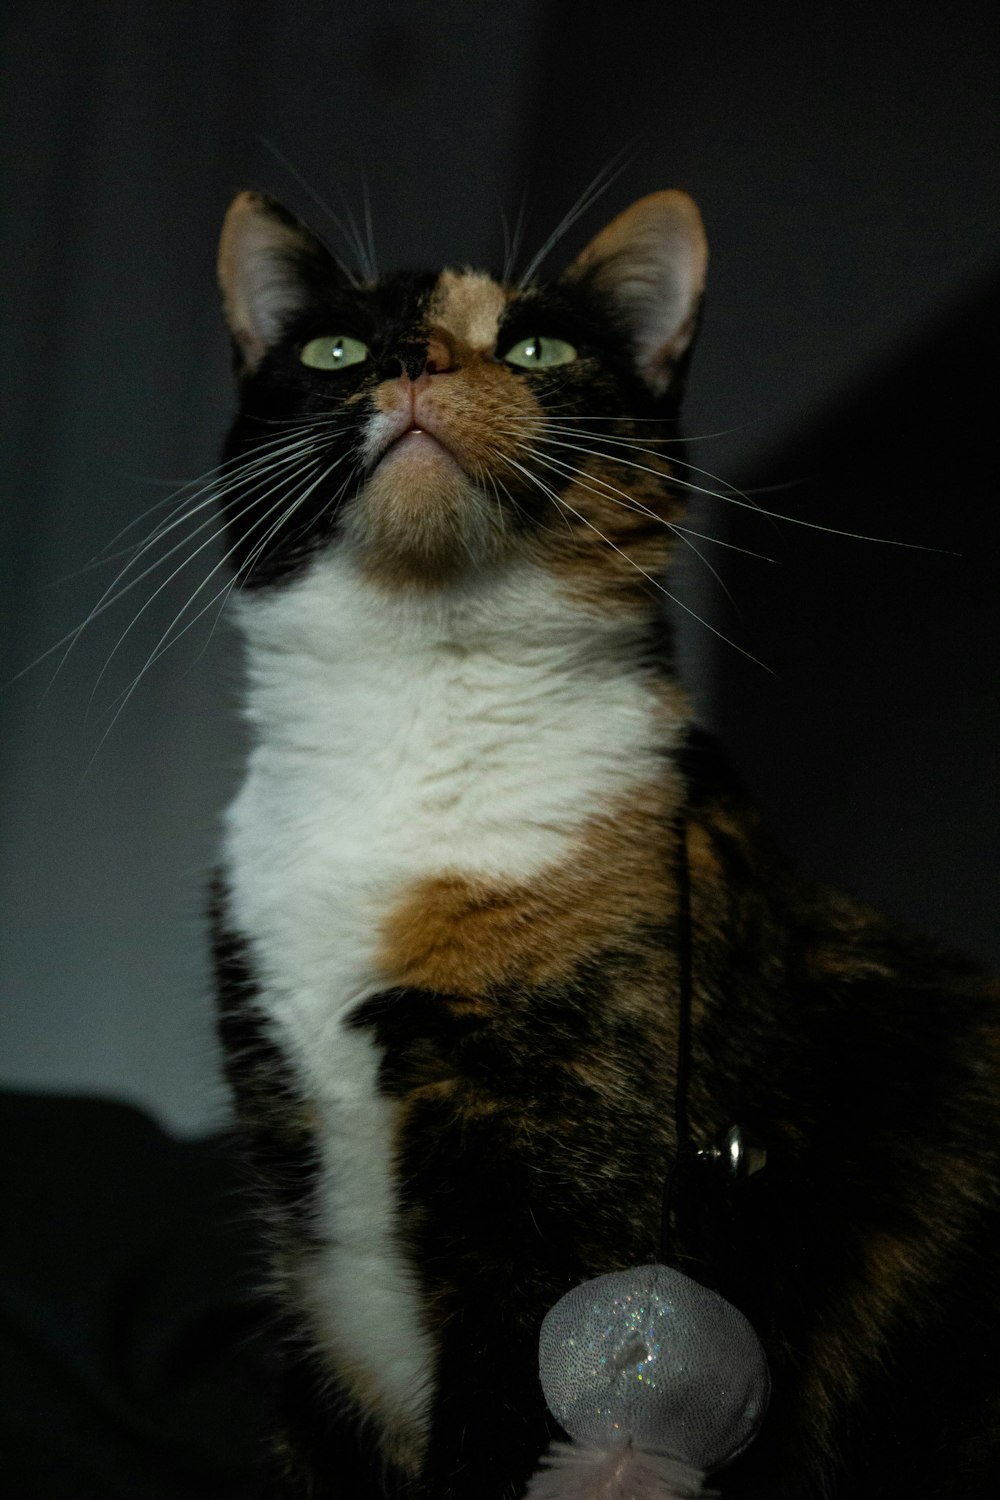 Un gato calicó sentado en la oscuridad mirando hacia arriba